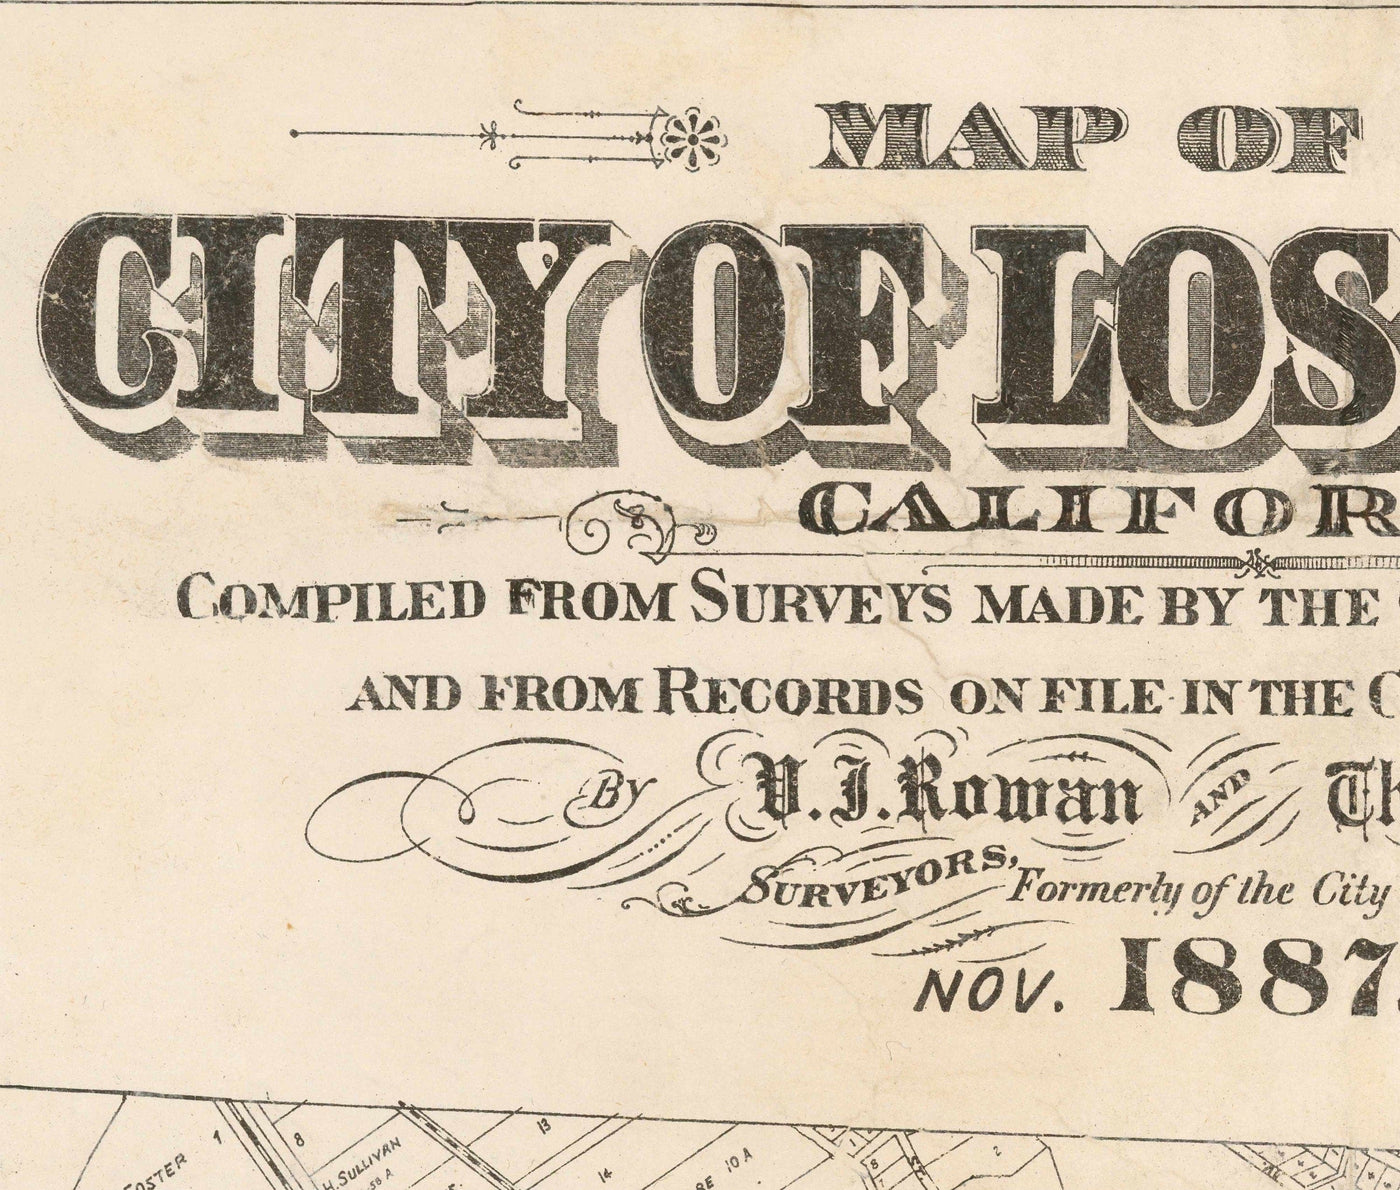 Ancienne carte de Los Angeles, 1887 - Tableau de la ville rare - Downtown, Chinatown, District financier, Rangée de dérapage, District de mode